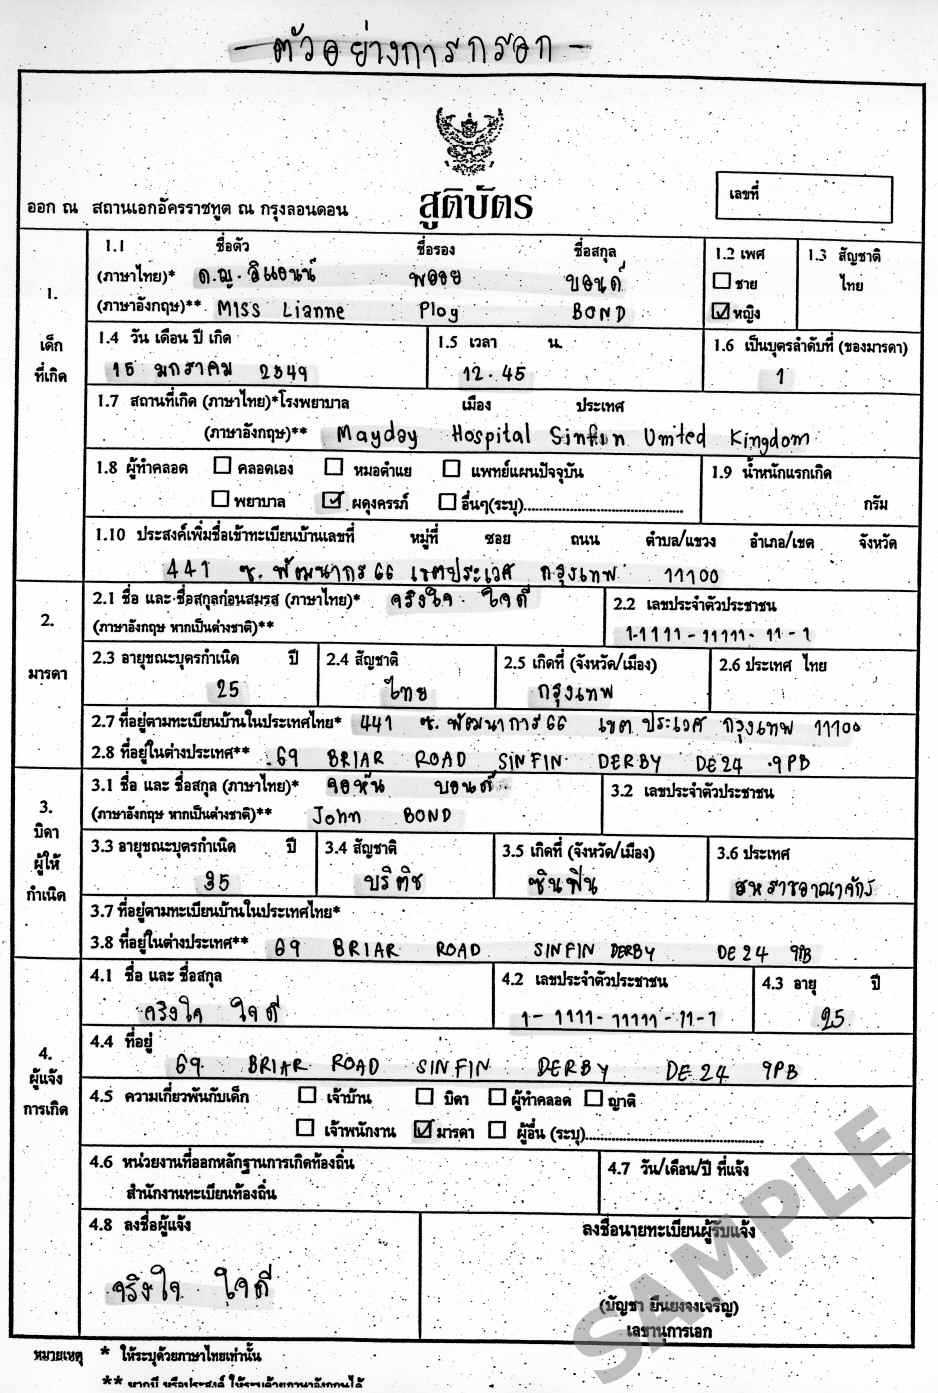 Birth & Death Registration : Birth & Death Registration In Birth Certificate Template Uk